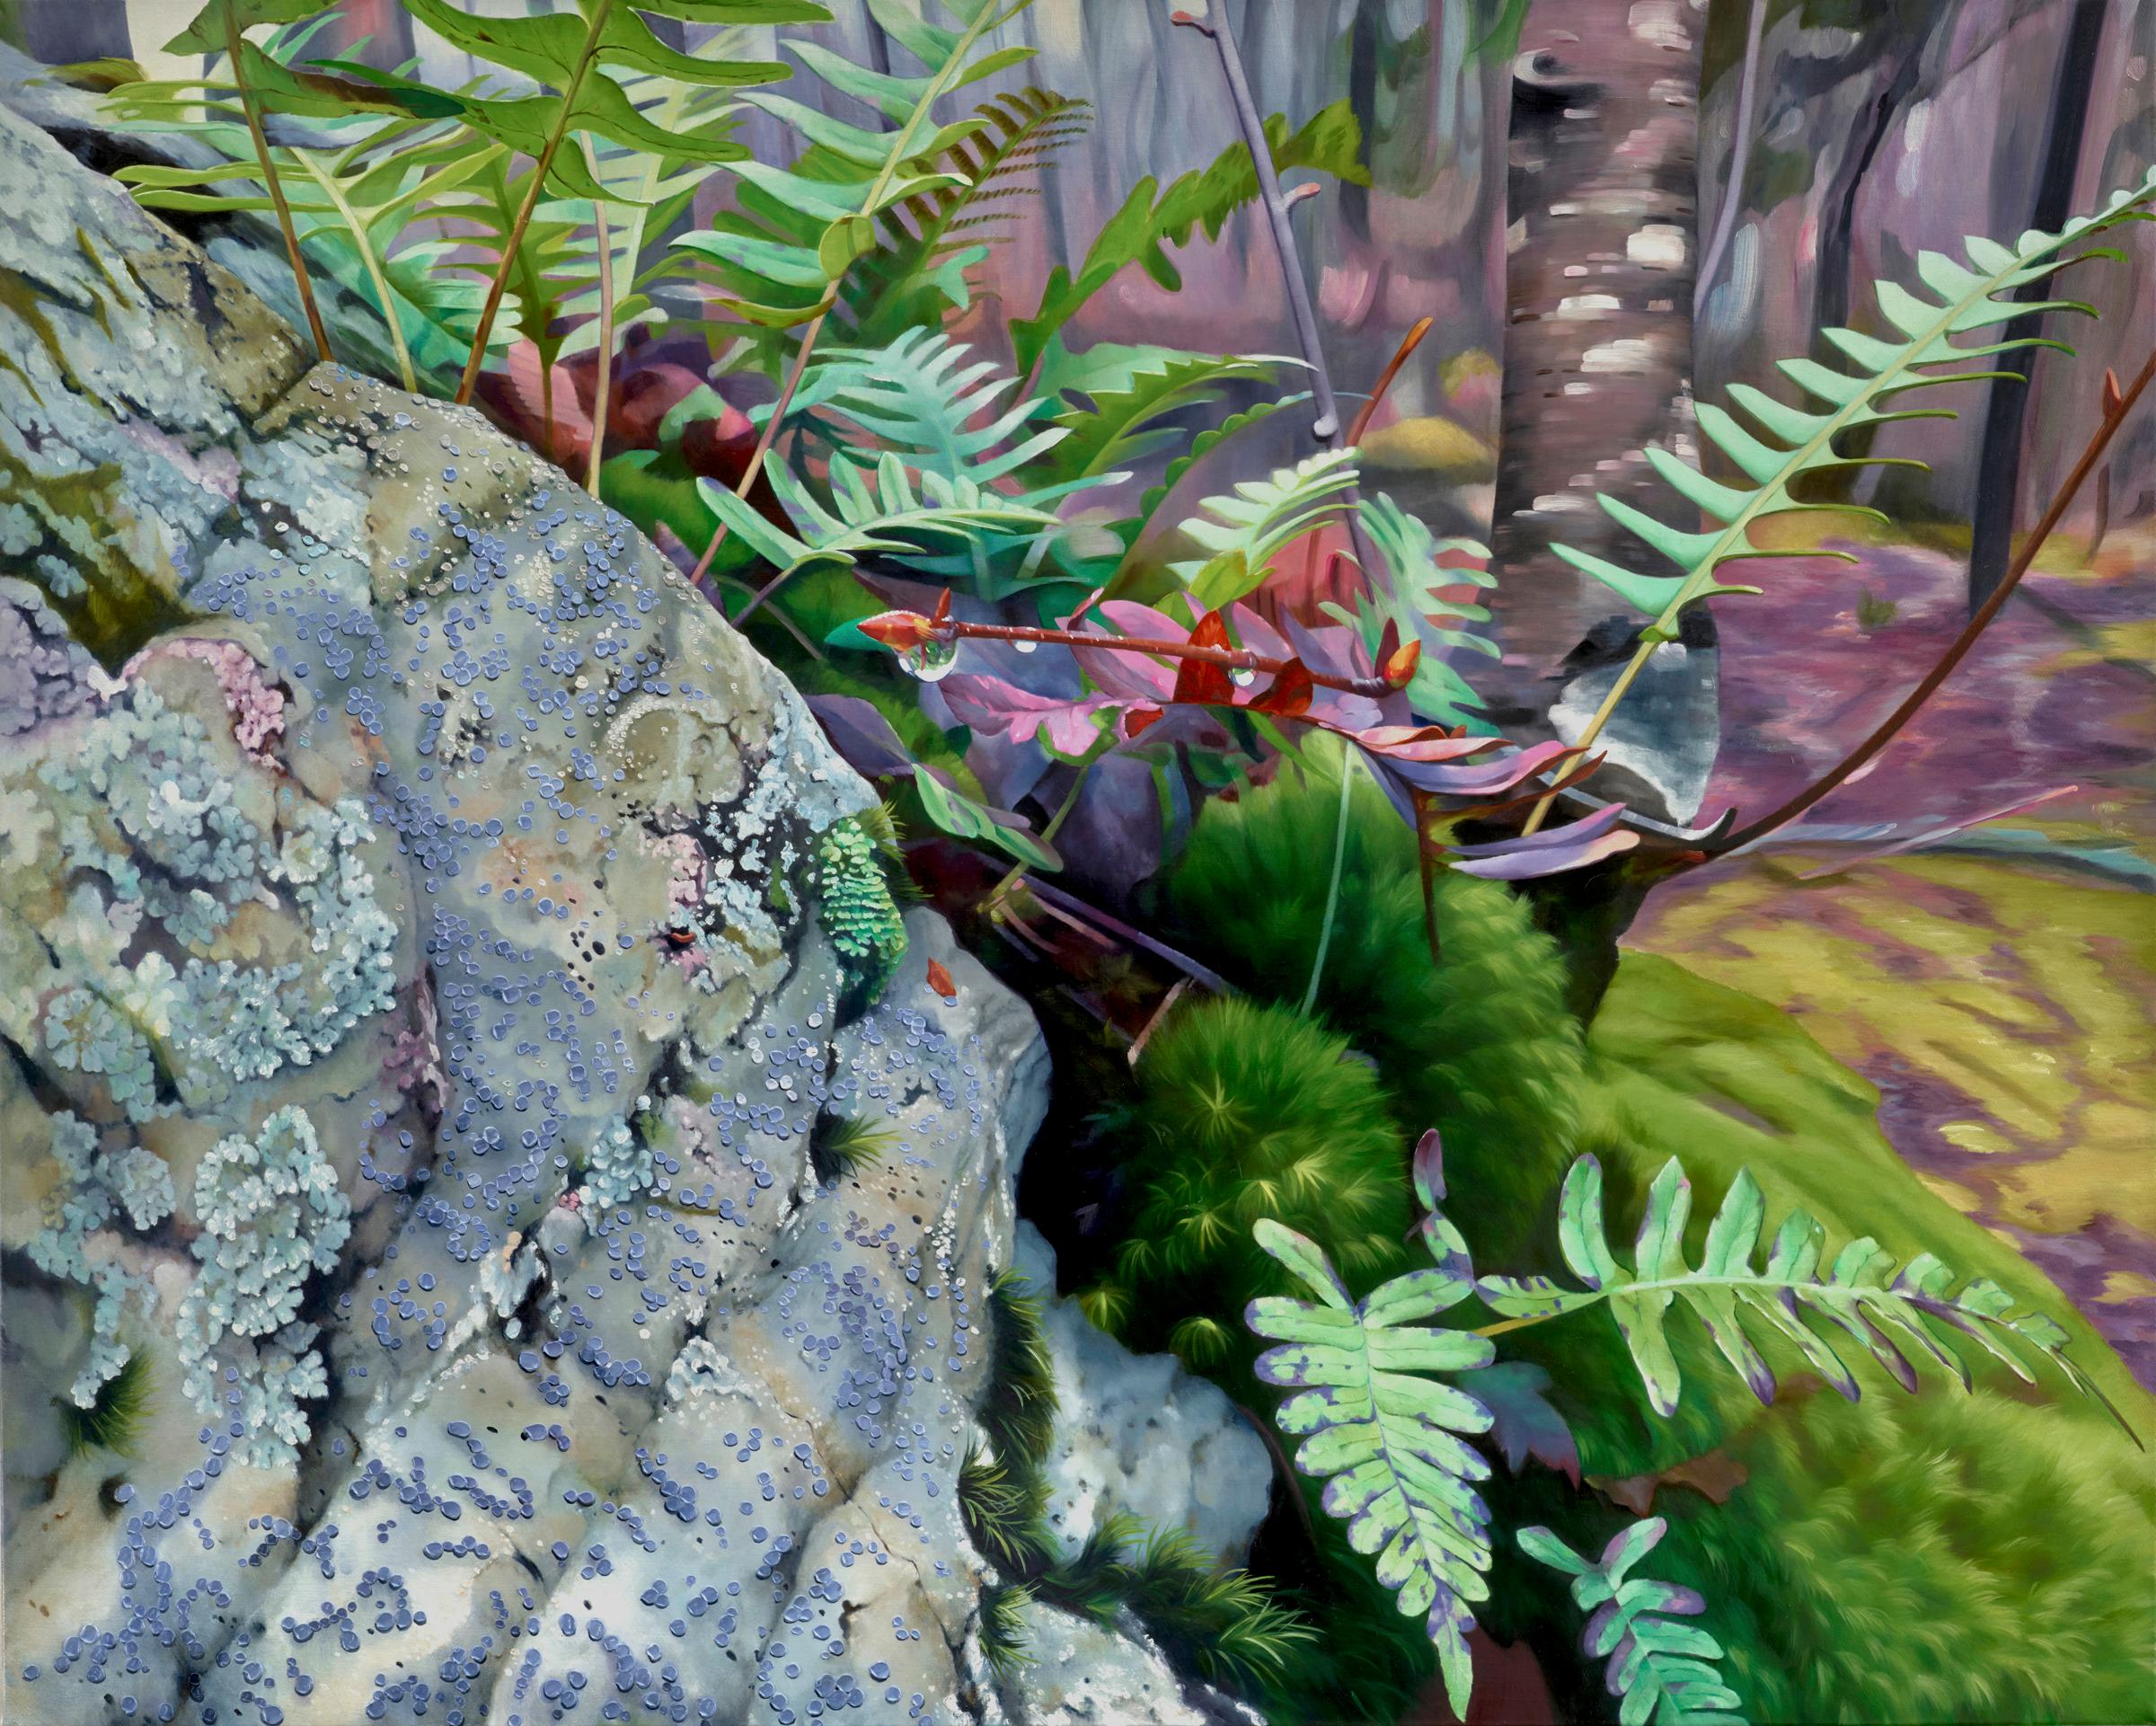 Landscape Painting Alexandra Pacula - SPRING THAW - rose et vert / roche moussue / forêt du Nord-Ouest Pacifique